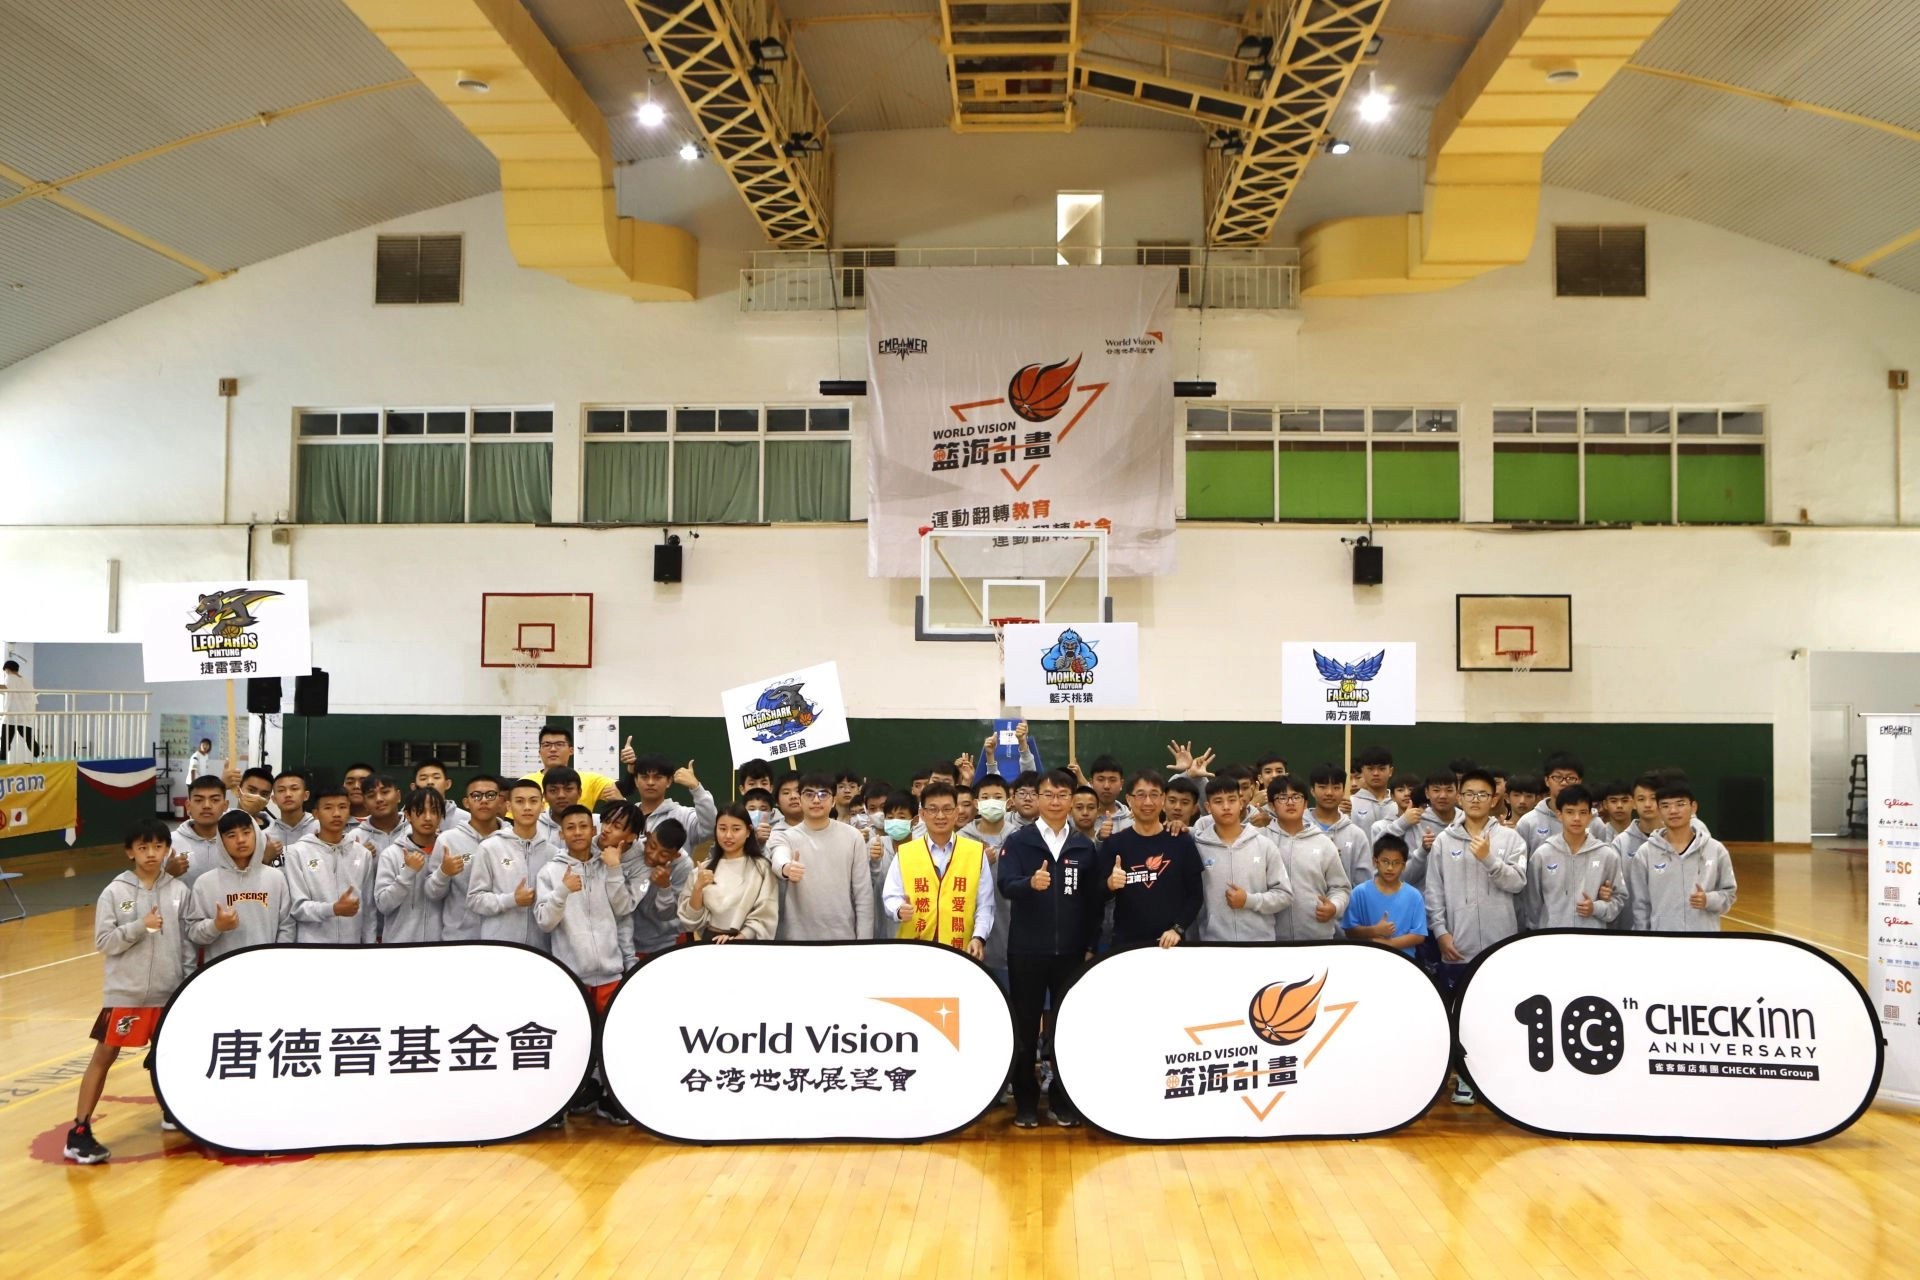 台灣世界展望會於129-130在國立中山大學附屬國光高級中學舉辦「籃海計畫」南區期中交流賽。